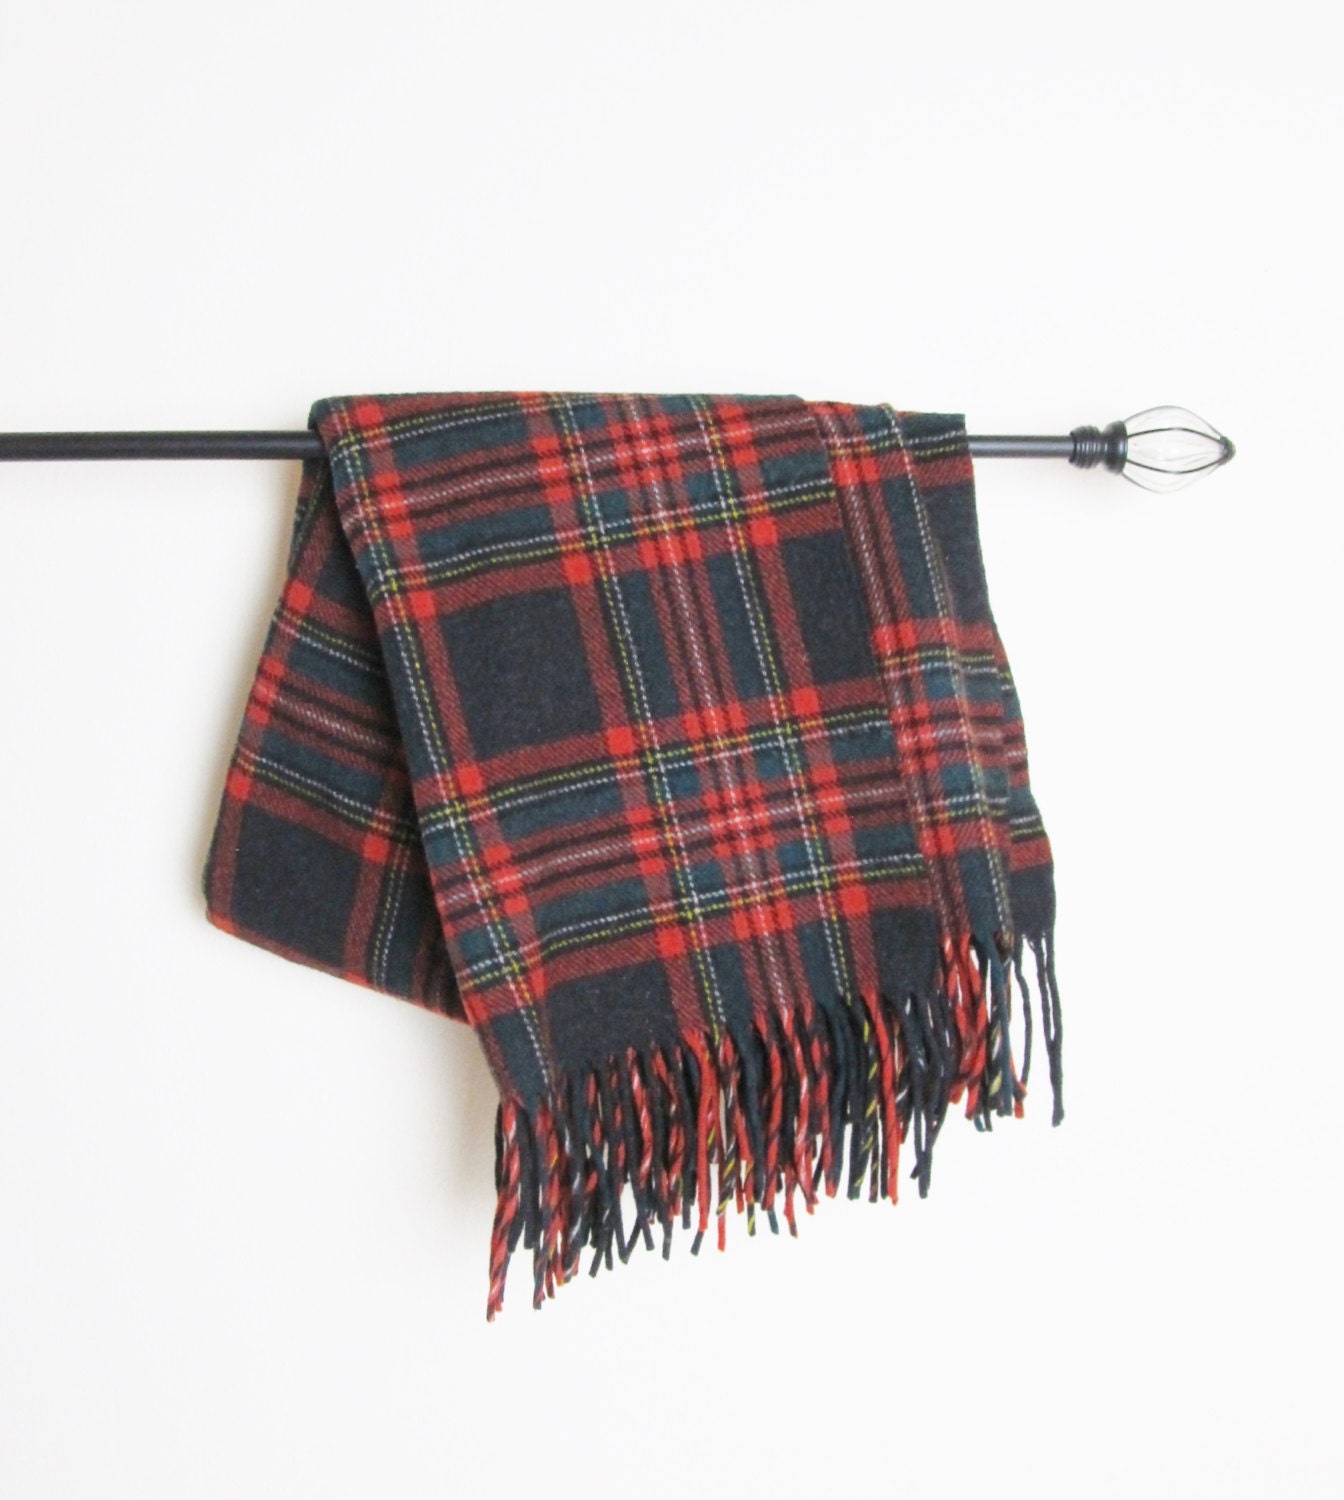 Vintage PENDLETON Blanket / Red Plaid Wool Throw by JLVintage